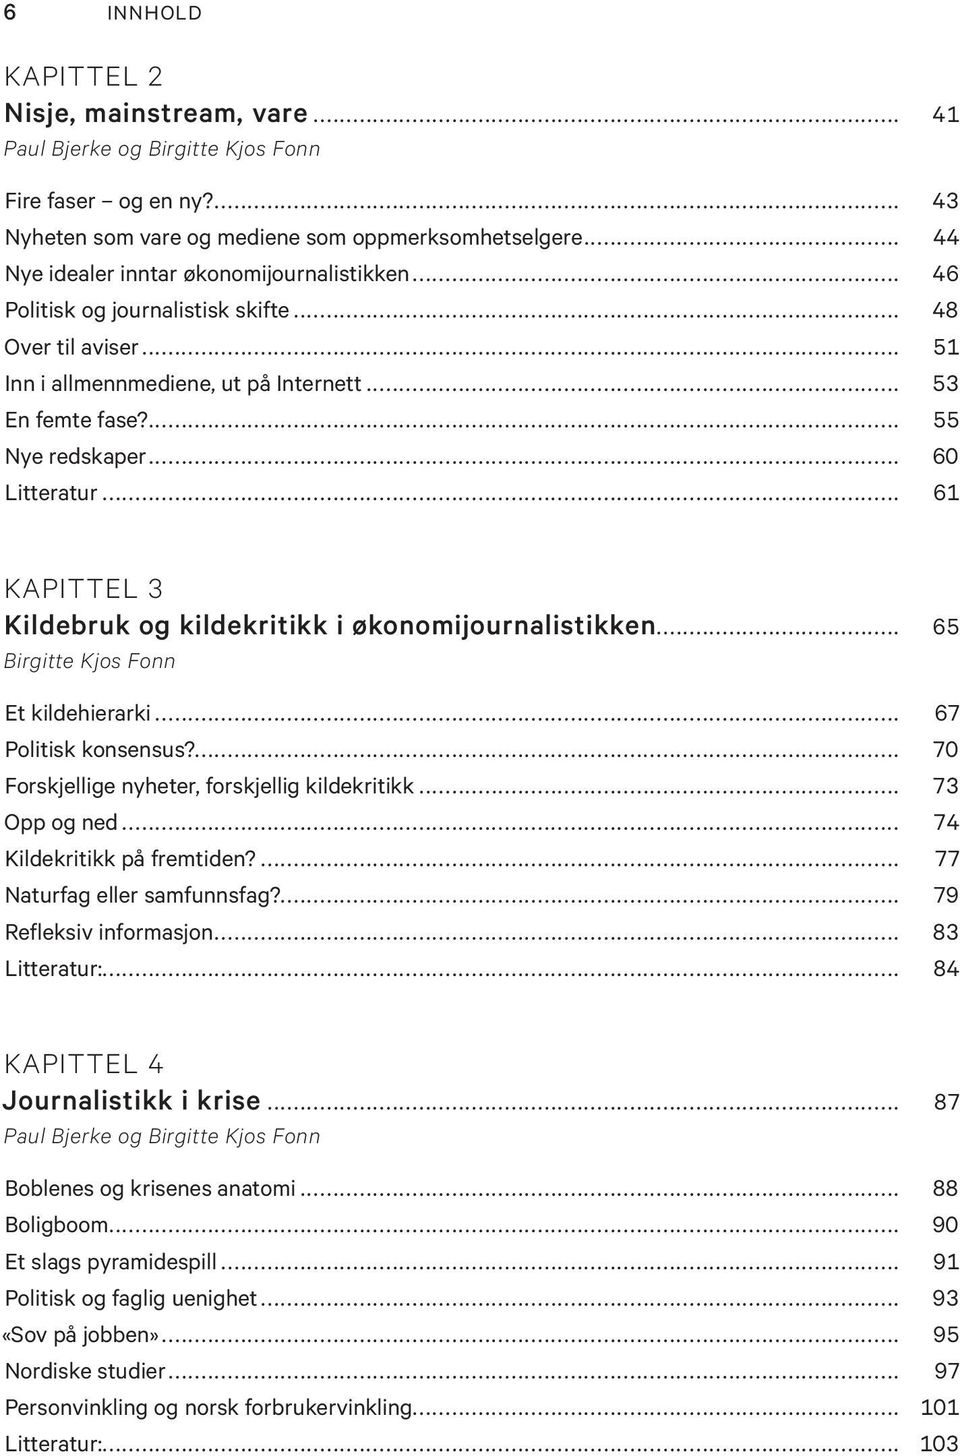 .. 60 Litteratur... 61 KAPITTEL 3 Kildebruk og kildekritikk i økonomijournalistikken... 65 Birgitte Kjos Fonn Et kildehierarki... 67 Politisk konsensus?